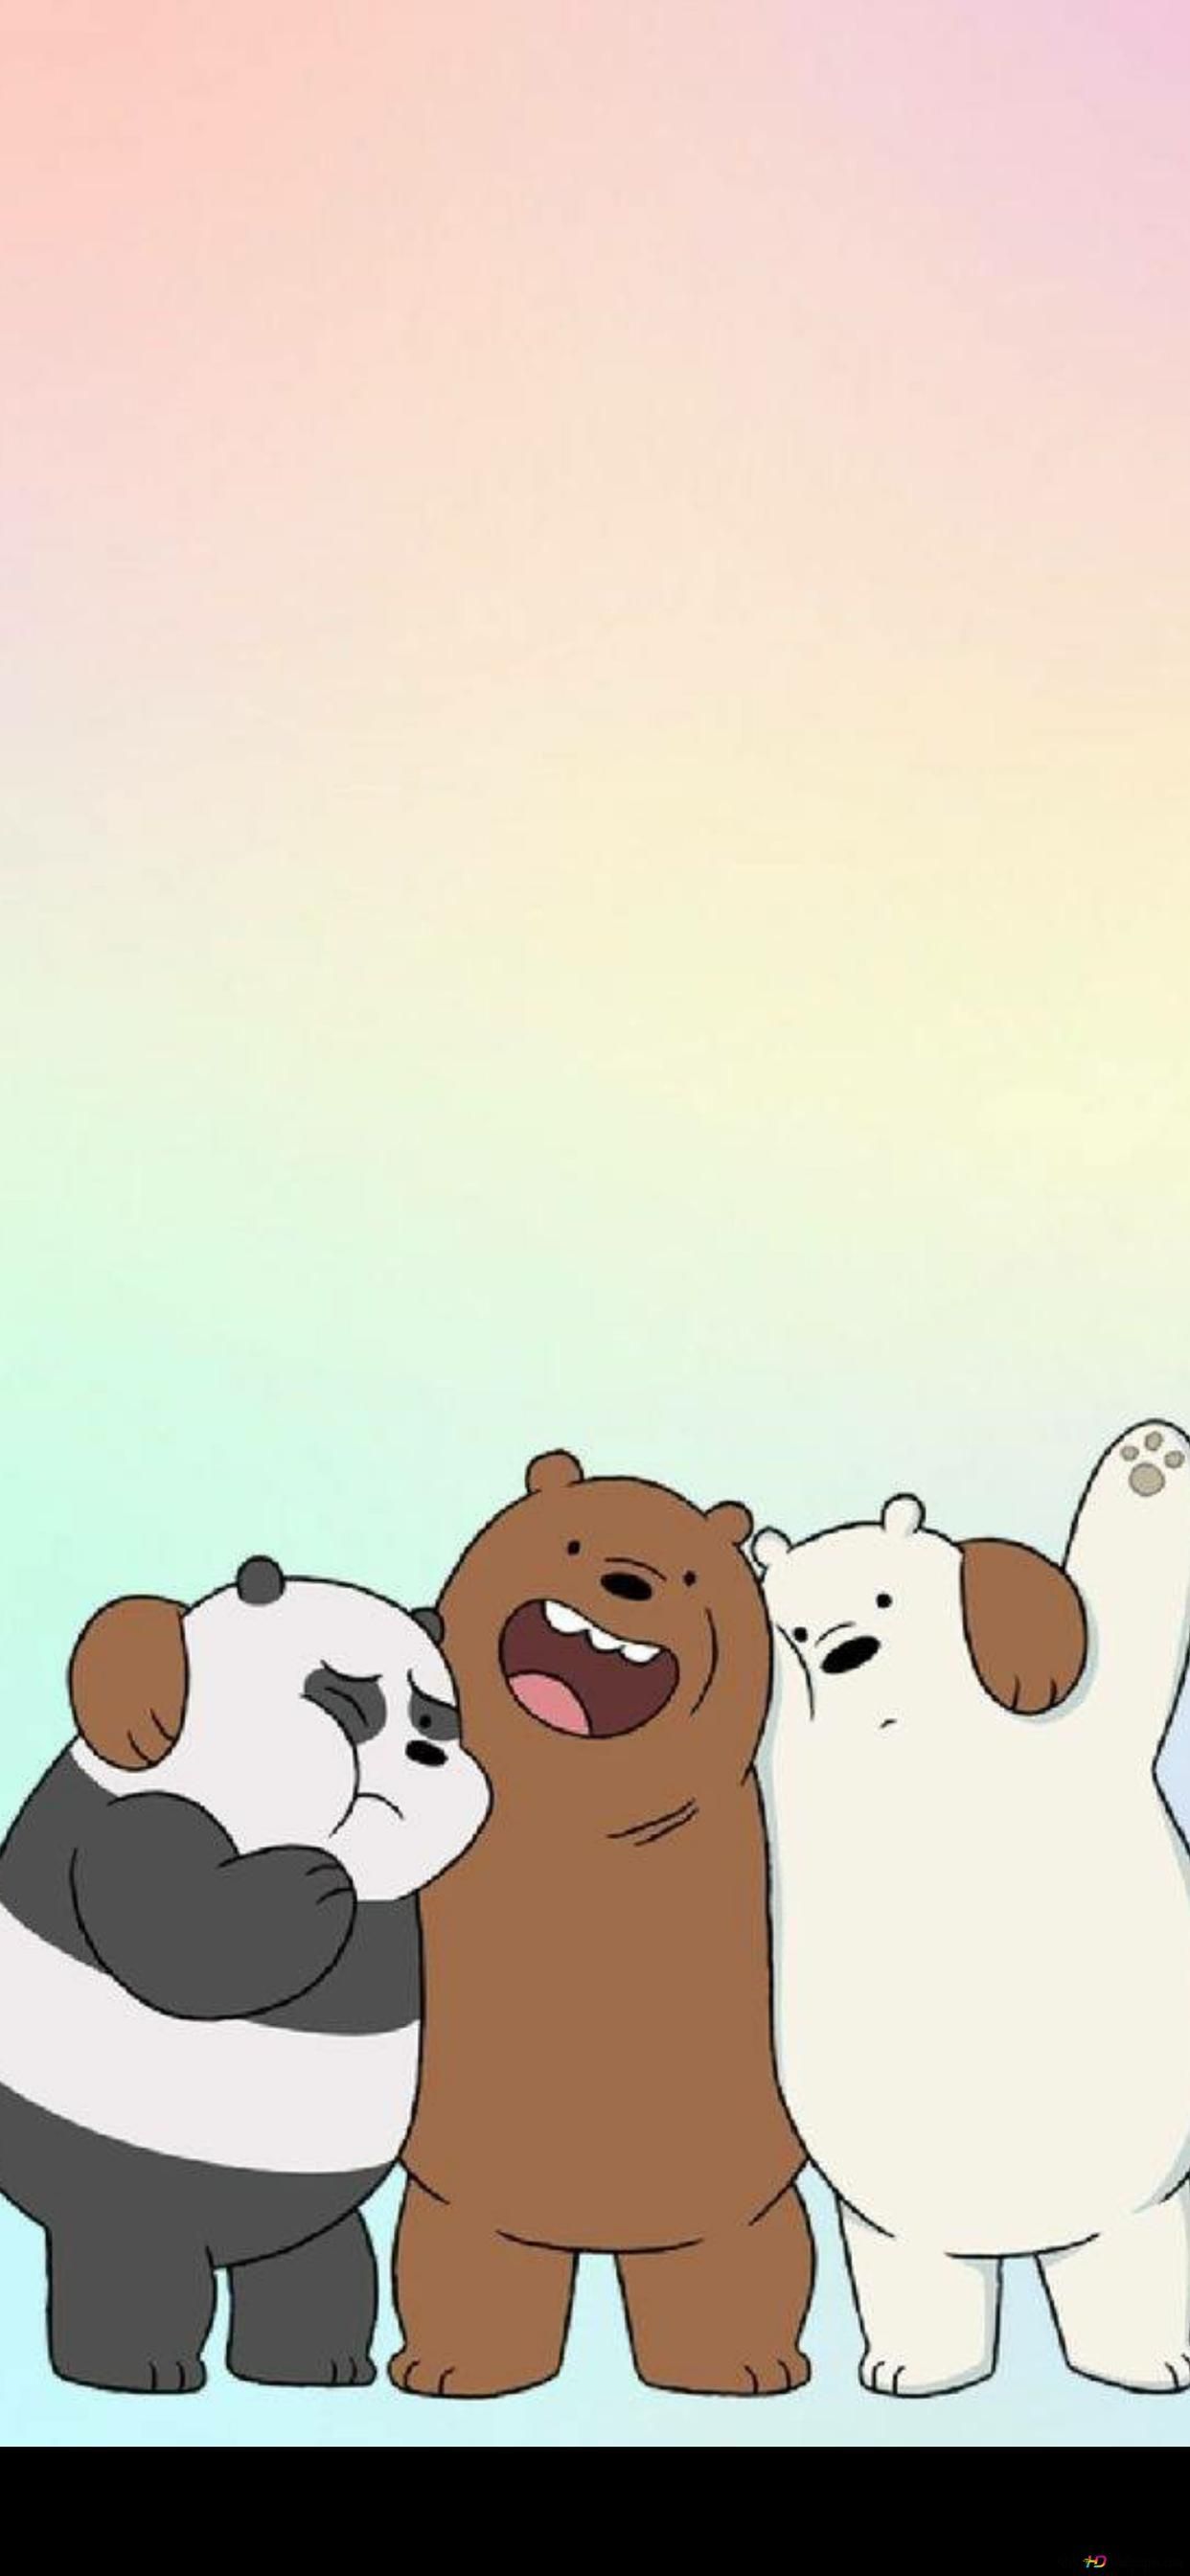 A cartoon bear and panda are hugging - We Bare Bears, panda